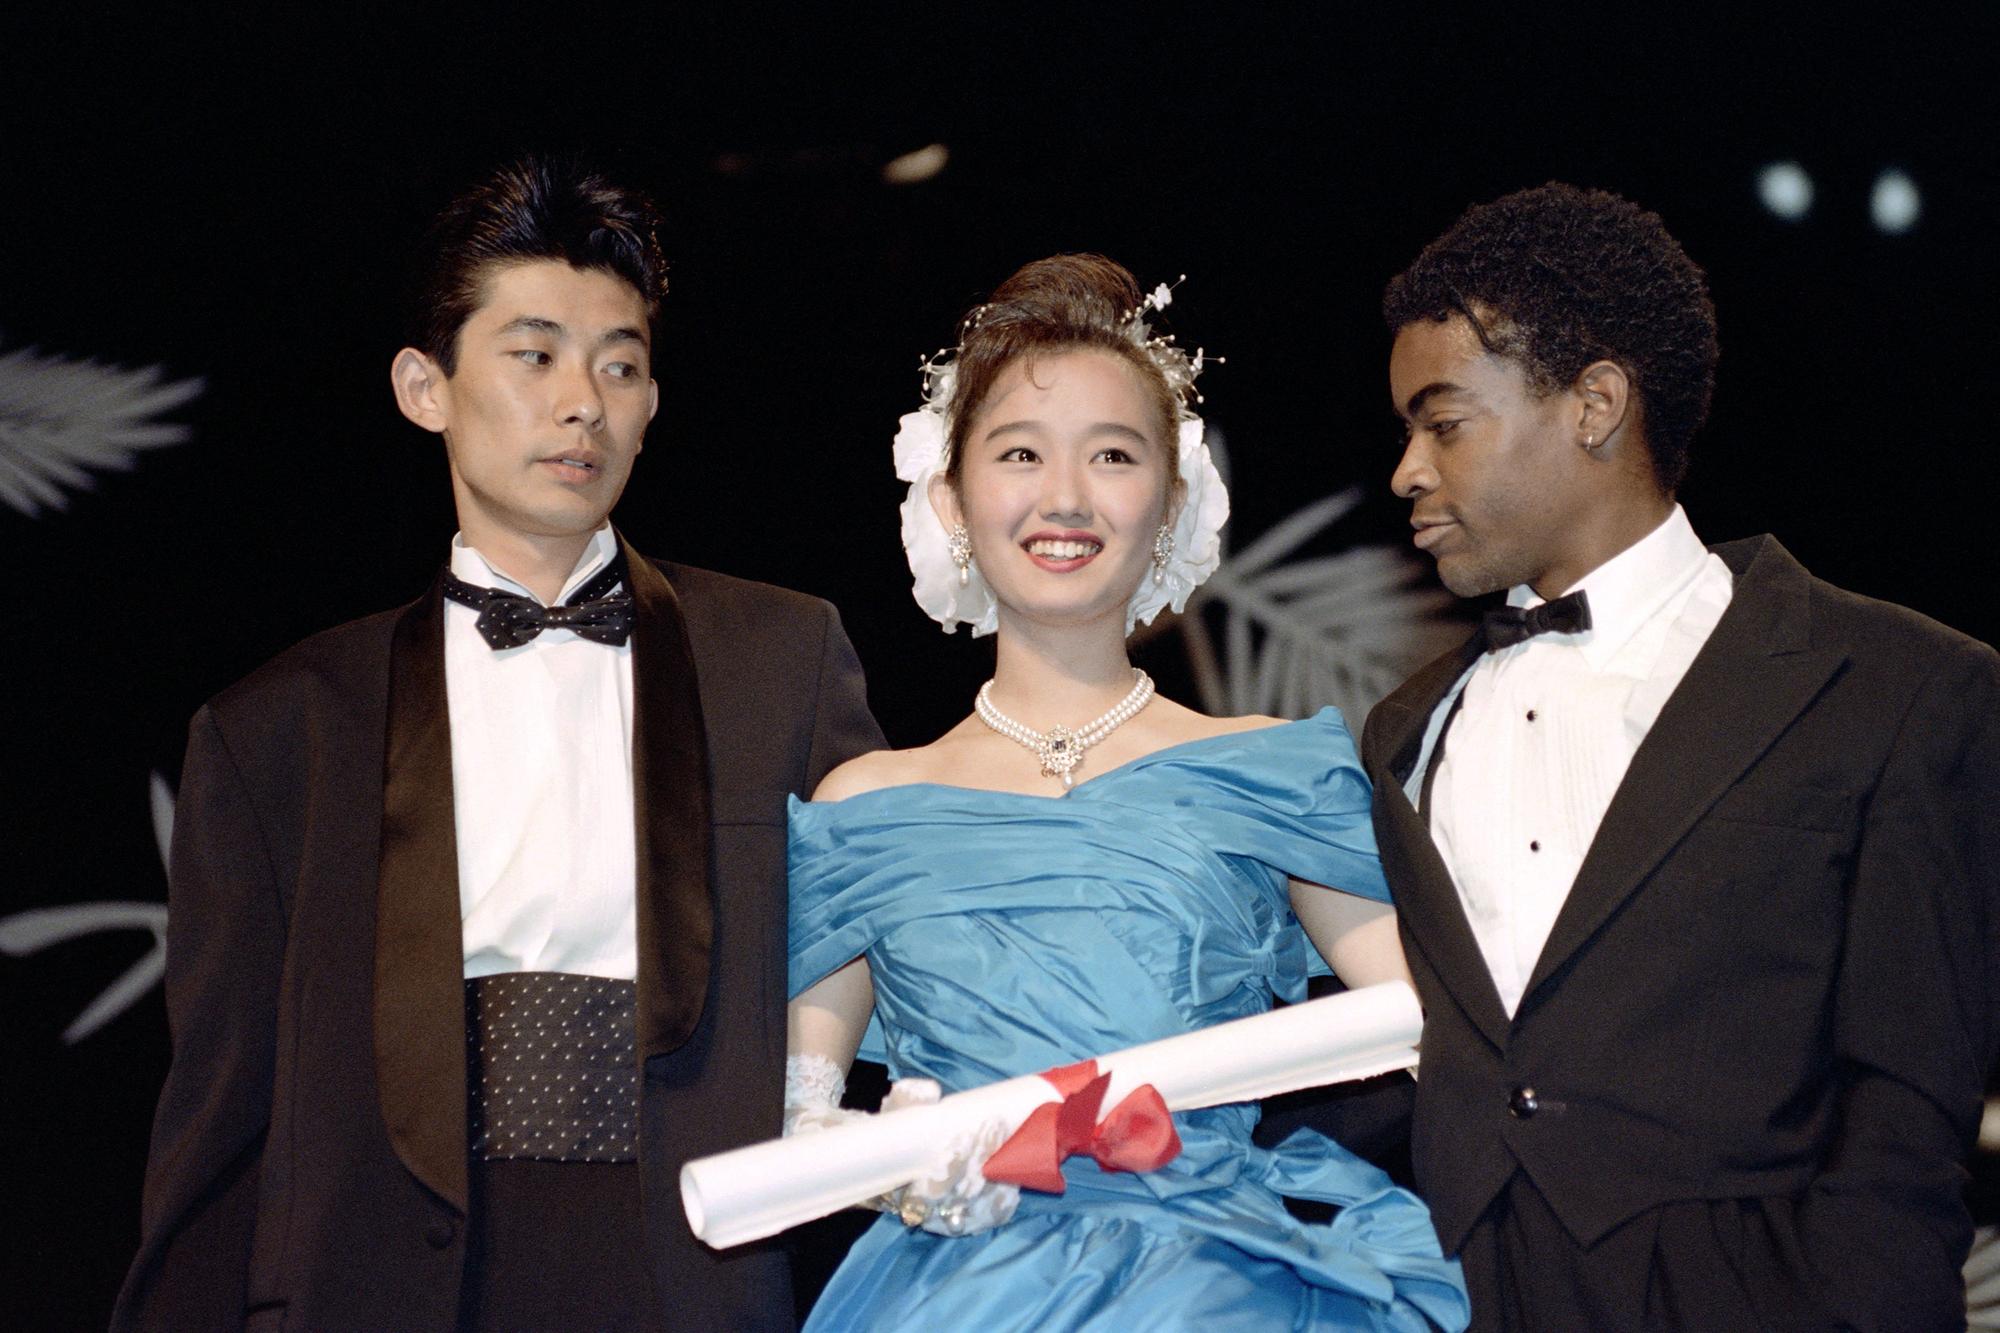 Les acteurs Masaotoshi Nagase (à gauche), Yuki Kudoh et Tom Noonan venus chercher le Prix de la meilleure contribution artistique pour le film "Mystery Train" de Jim Jarmusch à Cannes en 1989. [AFP]